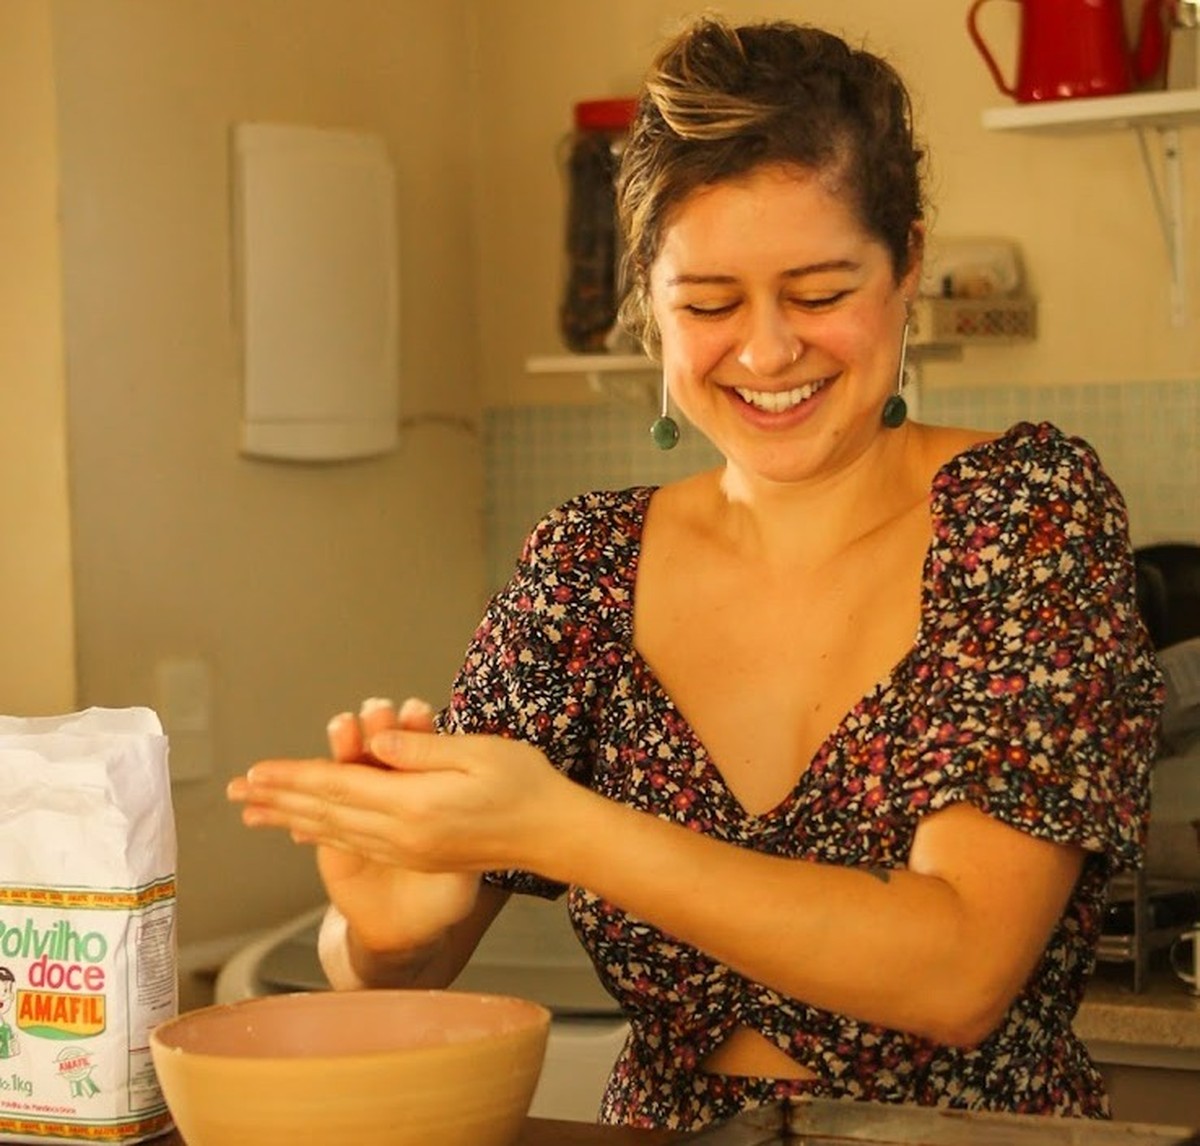 Comenzó ofreciendo desayunos veganos en su casa y ahora gana alrededor de R$ 10.000 al mes |  mujeres emprendedoras